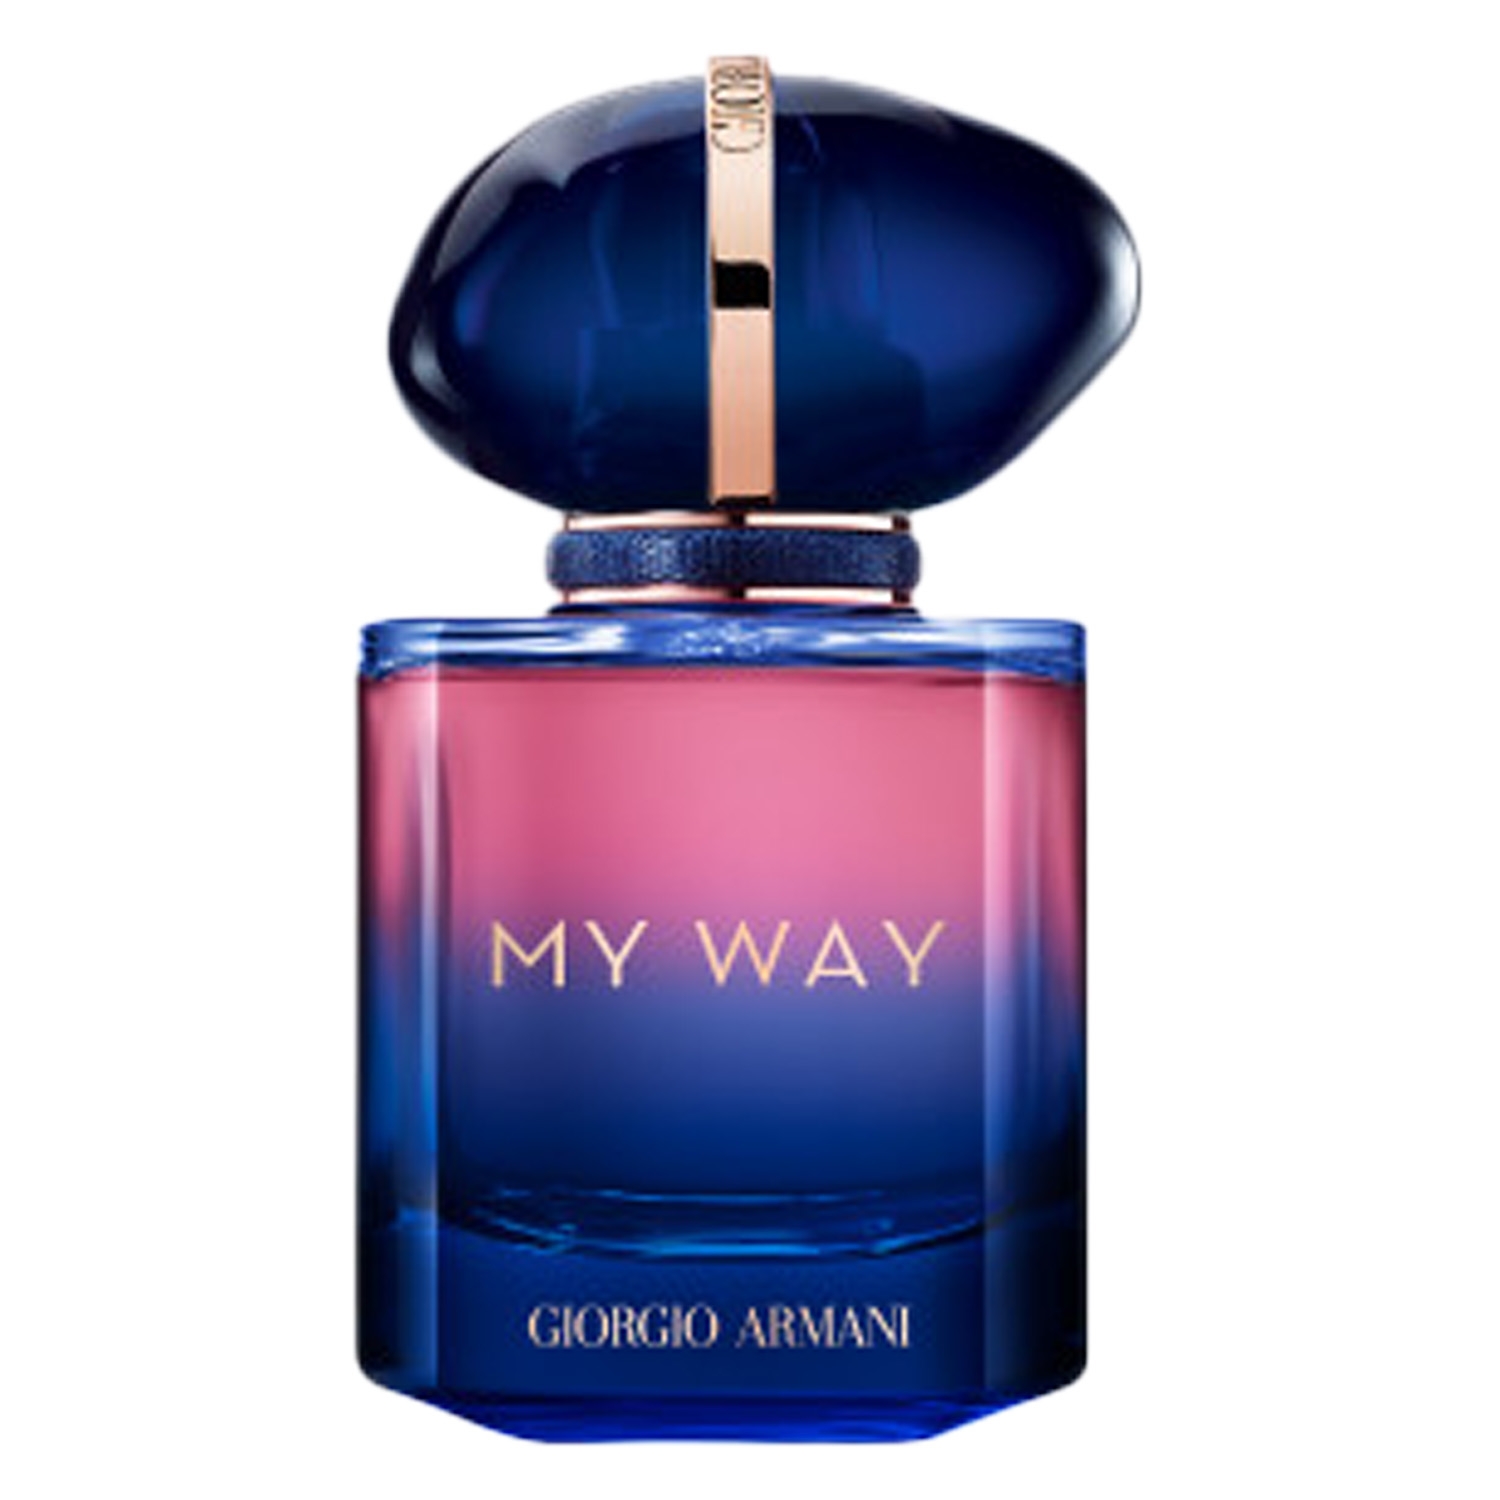 Produktbild von MY WAY - Parfum